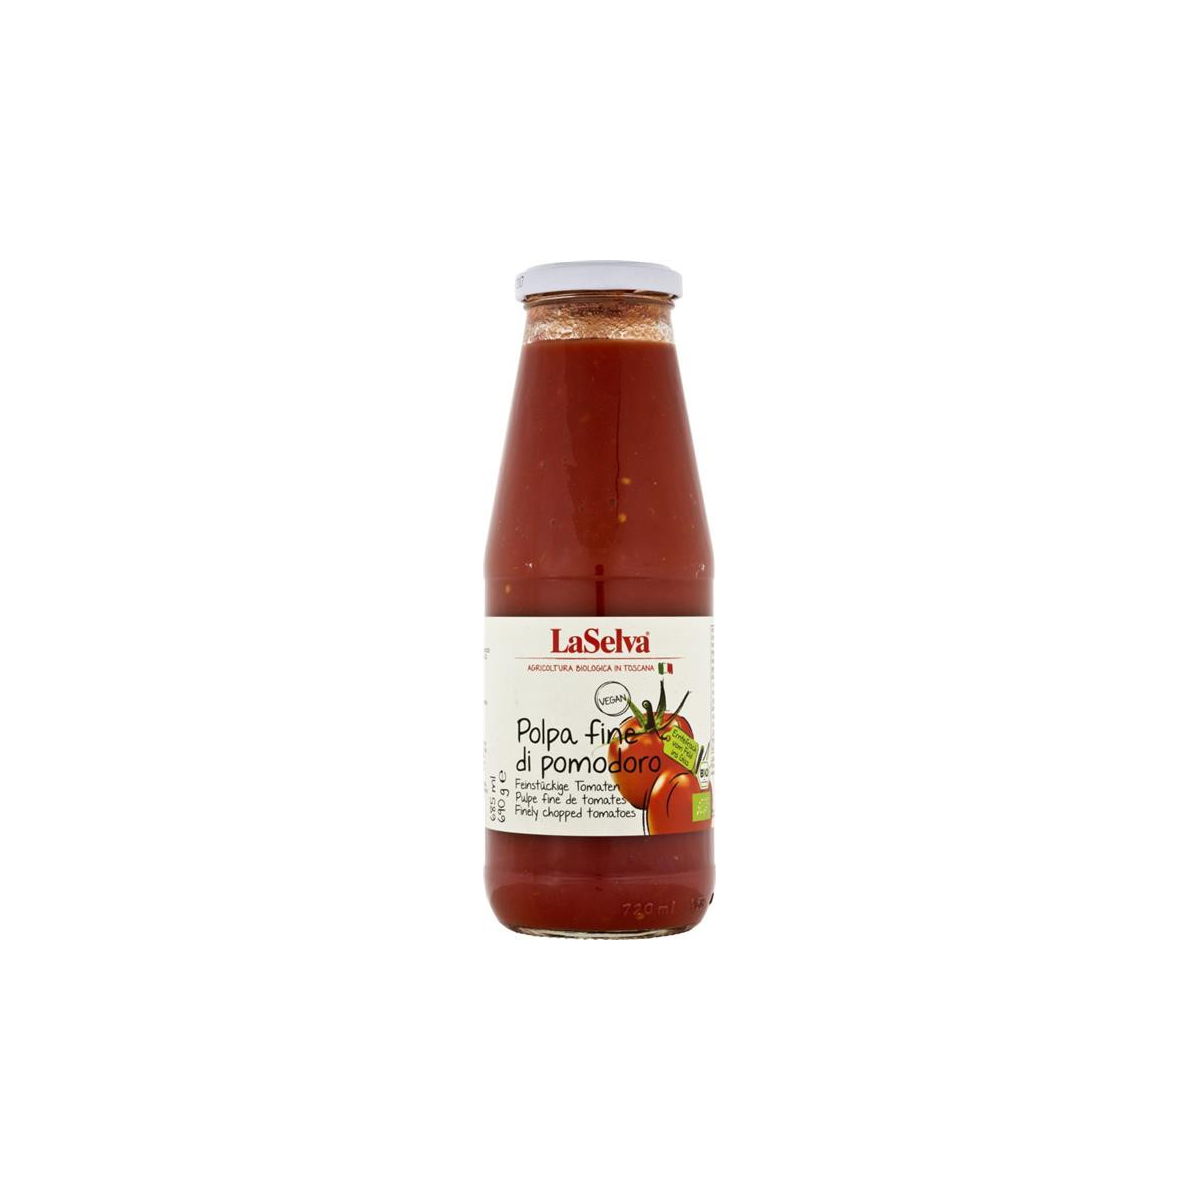 LaSelva - Polpa fine di pomodoro